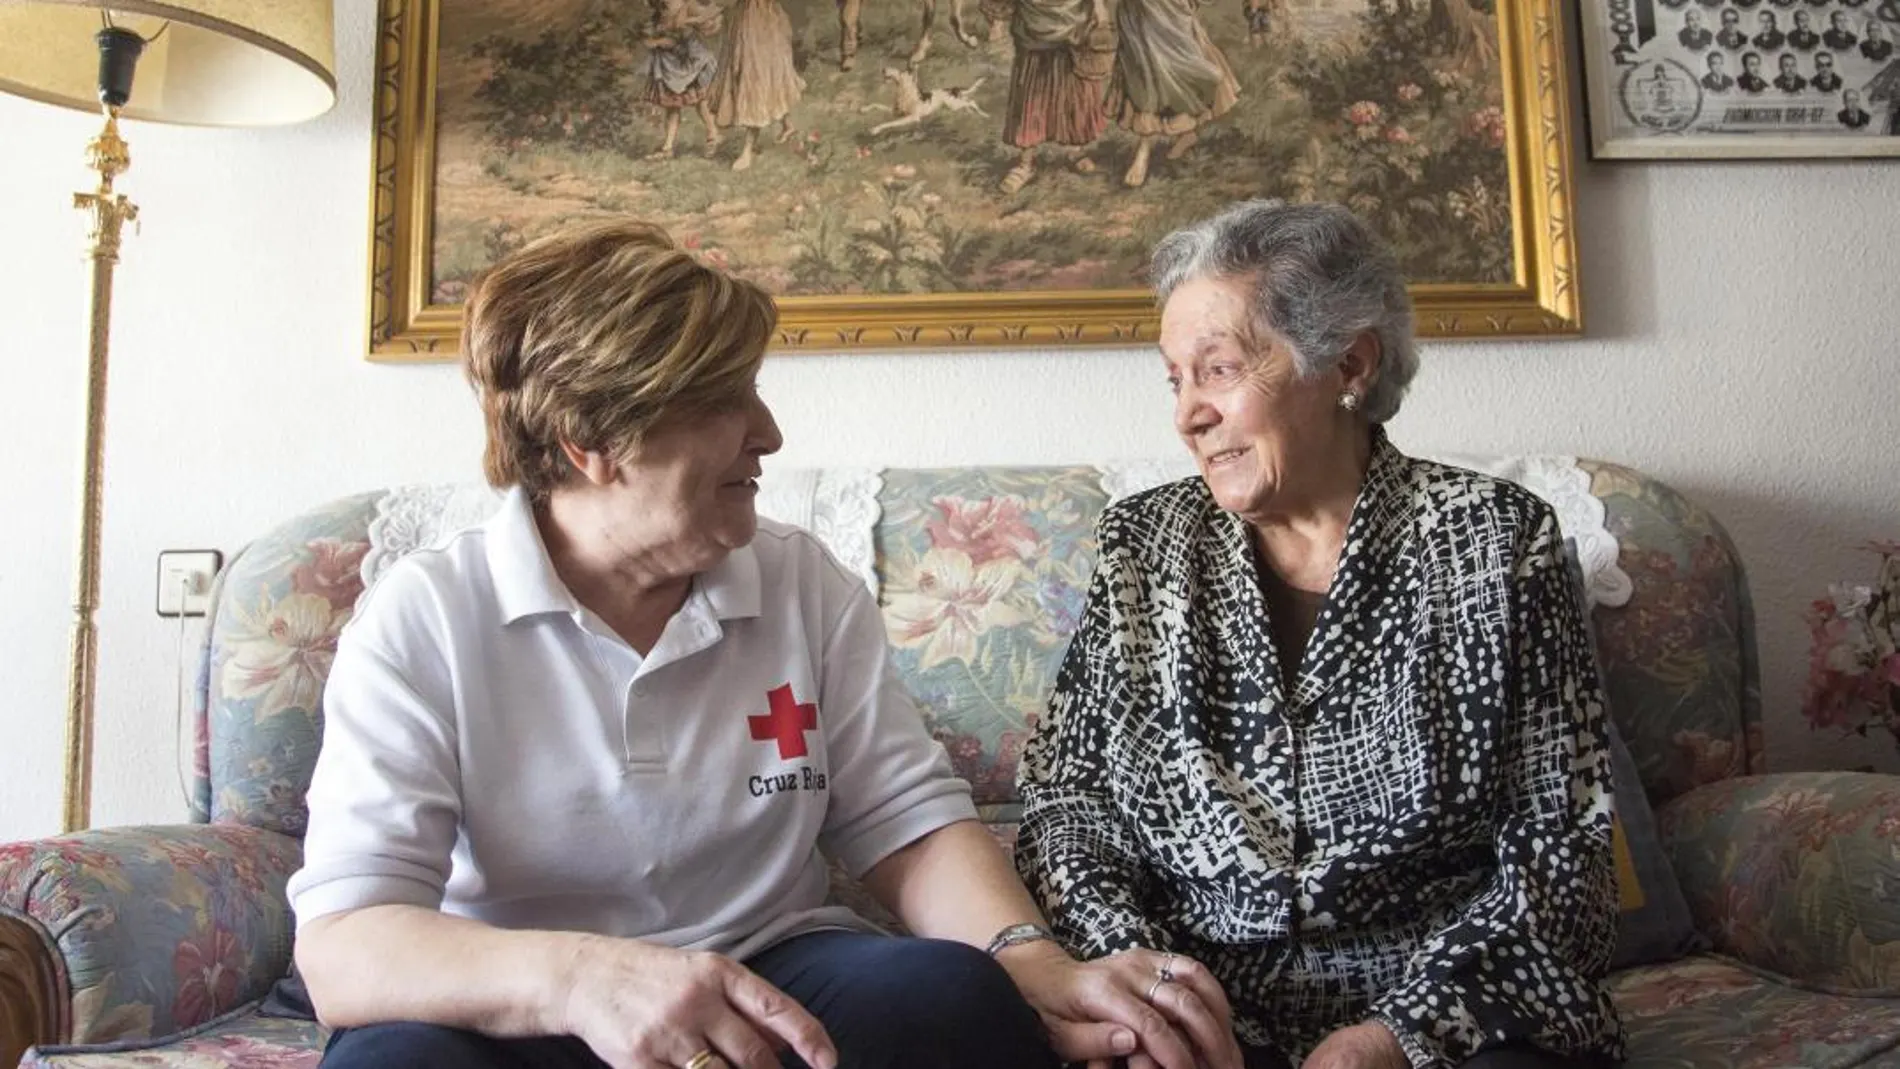 Asunción recibe la visita de Pepi, una voluntaria del programa de acompañamiento a mayores de la Cruz Roja en Castilla y León